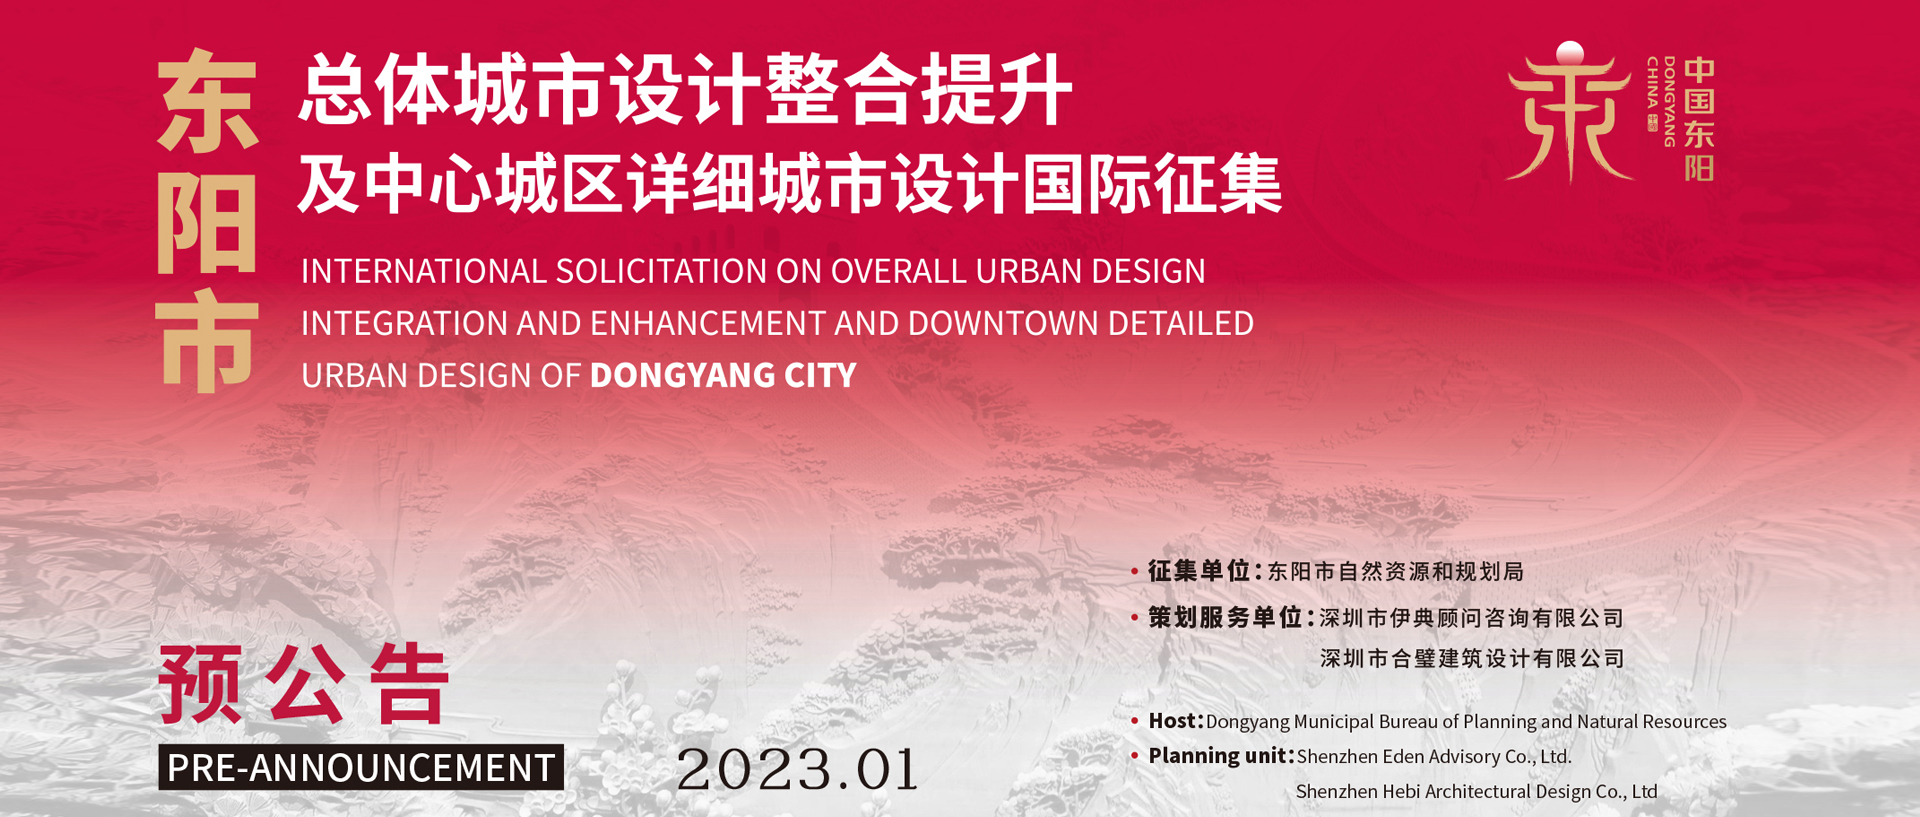 预公告 | 东阳市总体城市设计整合提升及中心城区详细城市设计国际征集